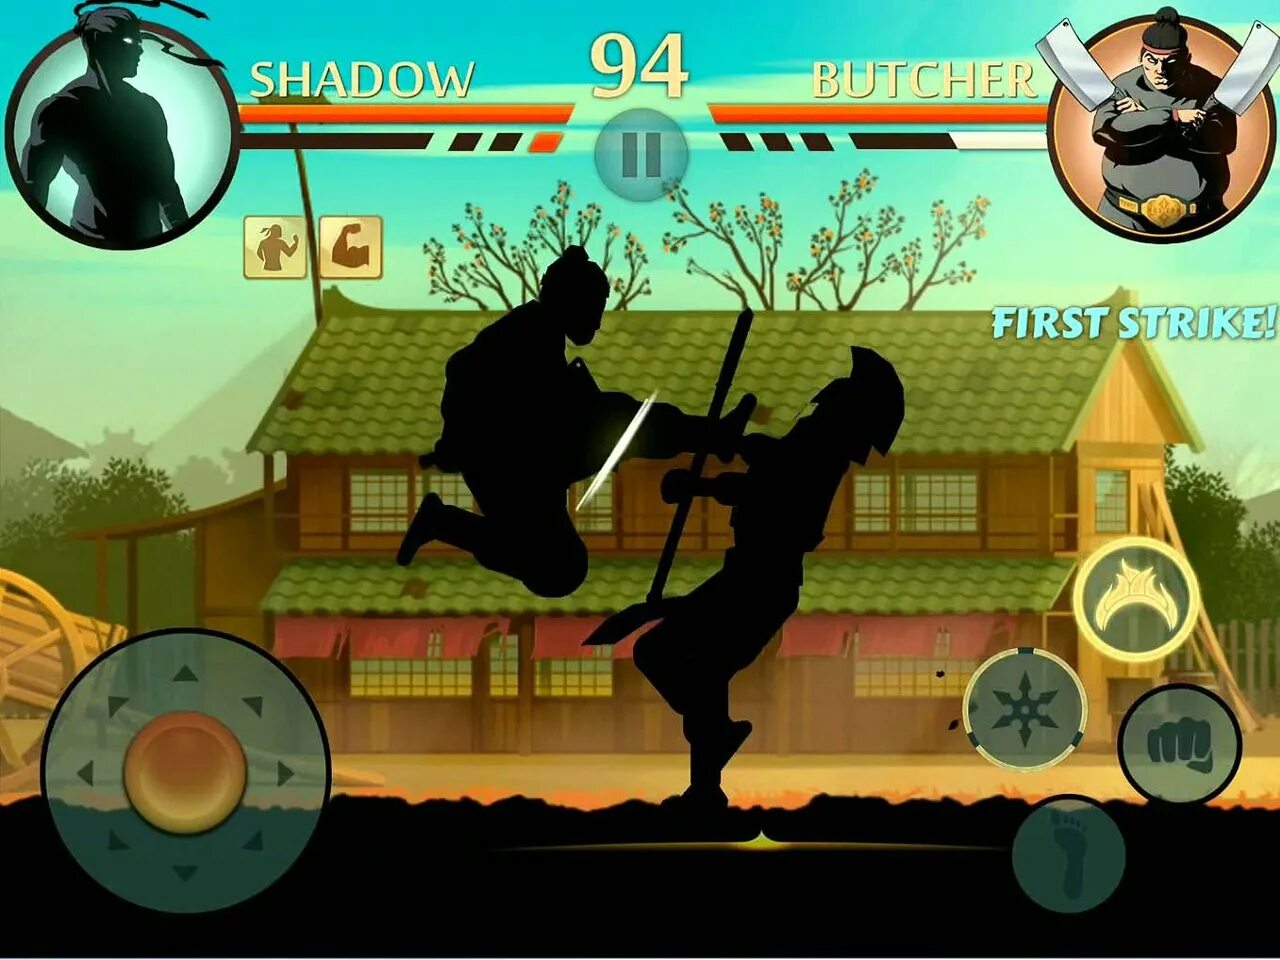 Шедоу файт 1. Shadow Fight 2. Шадоу ниндзя игра. Тень из игры Shadow Fight 2. Шедоу файл